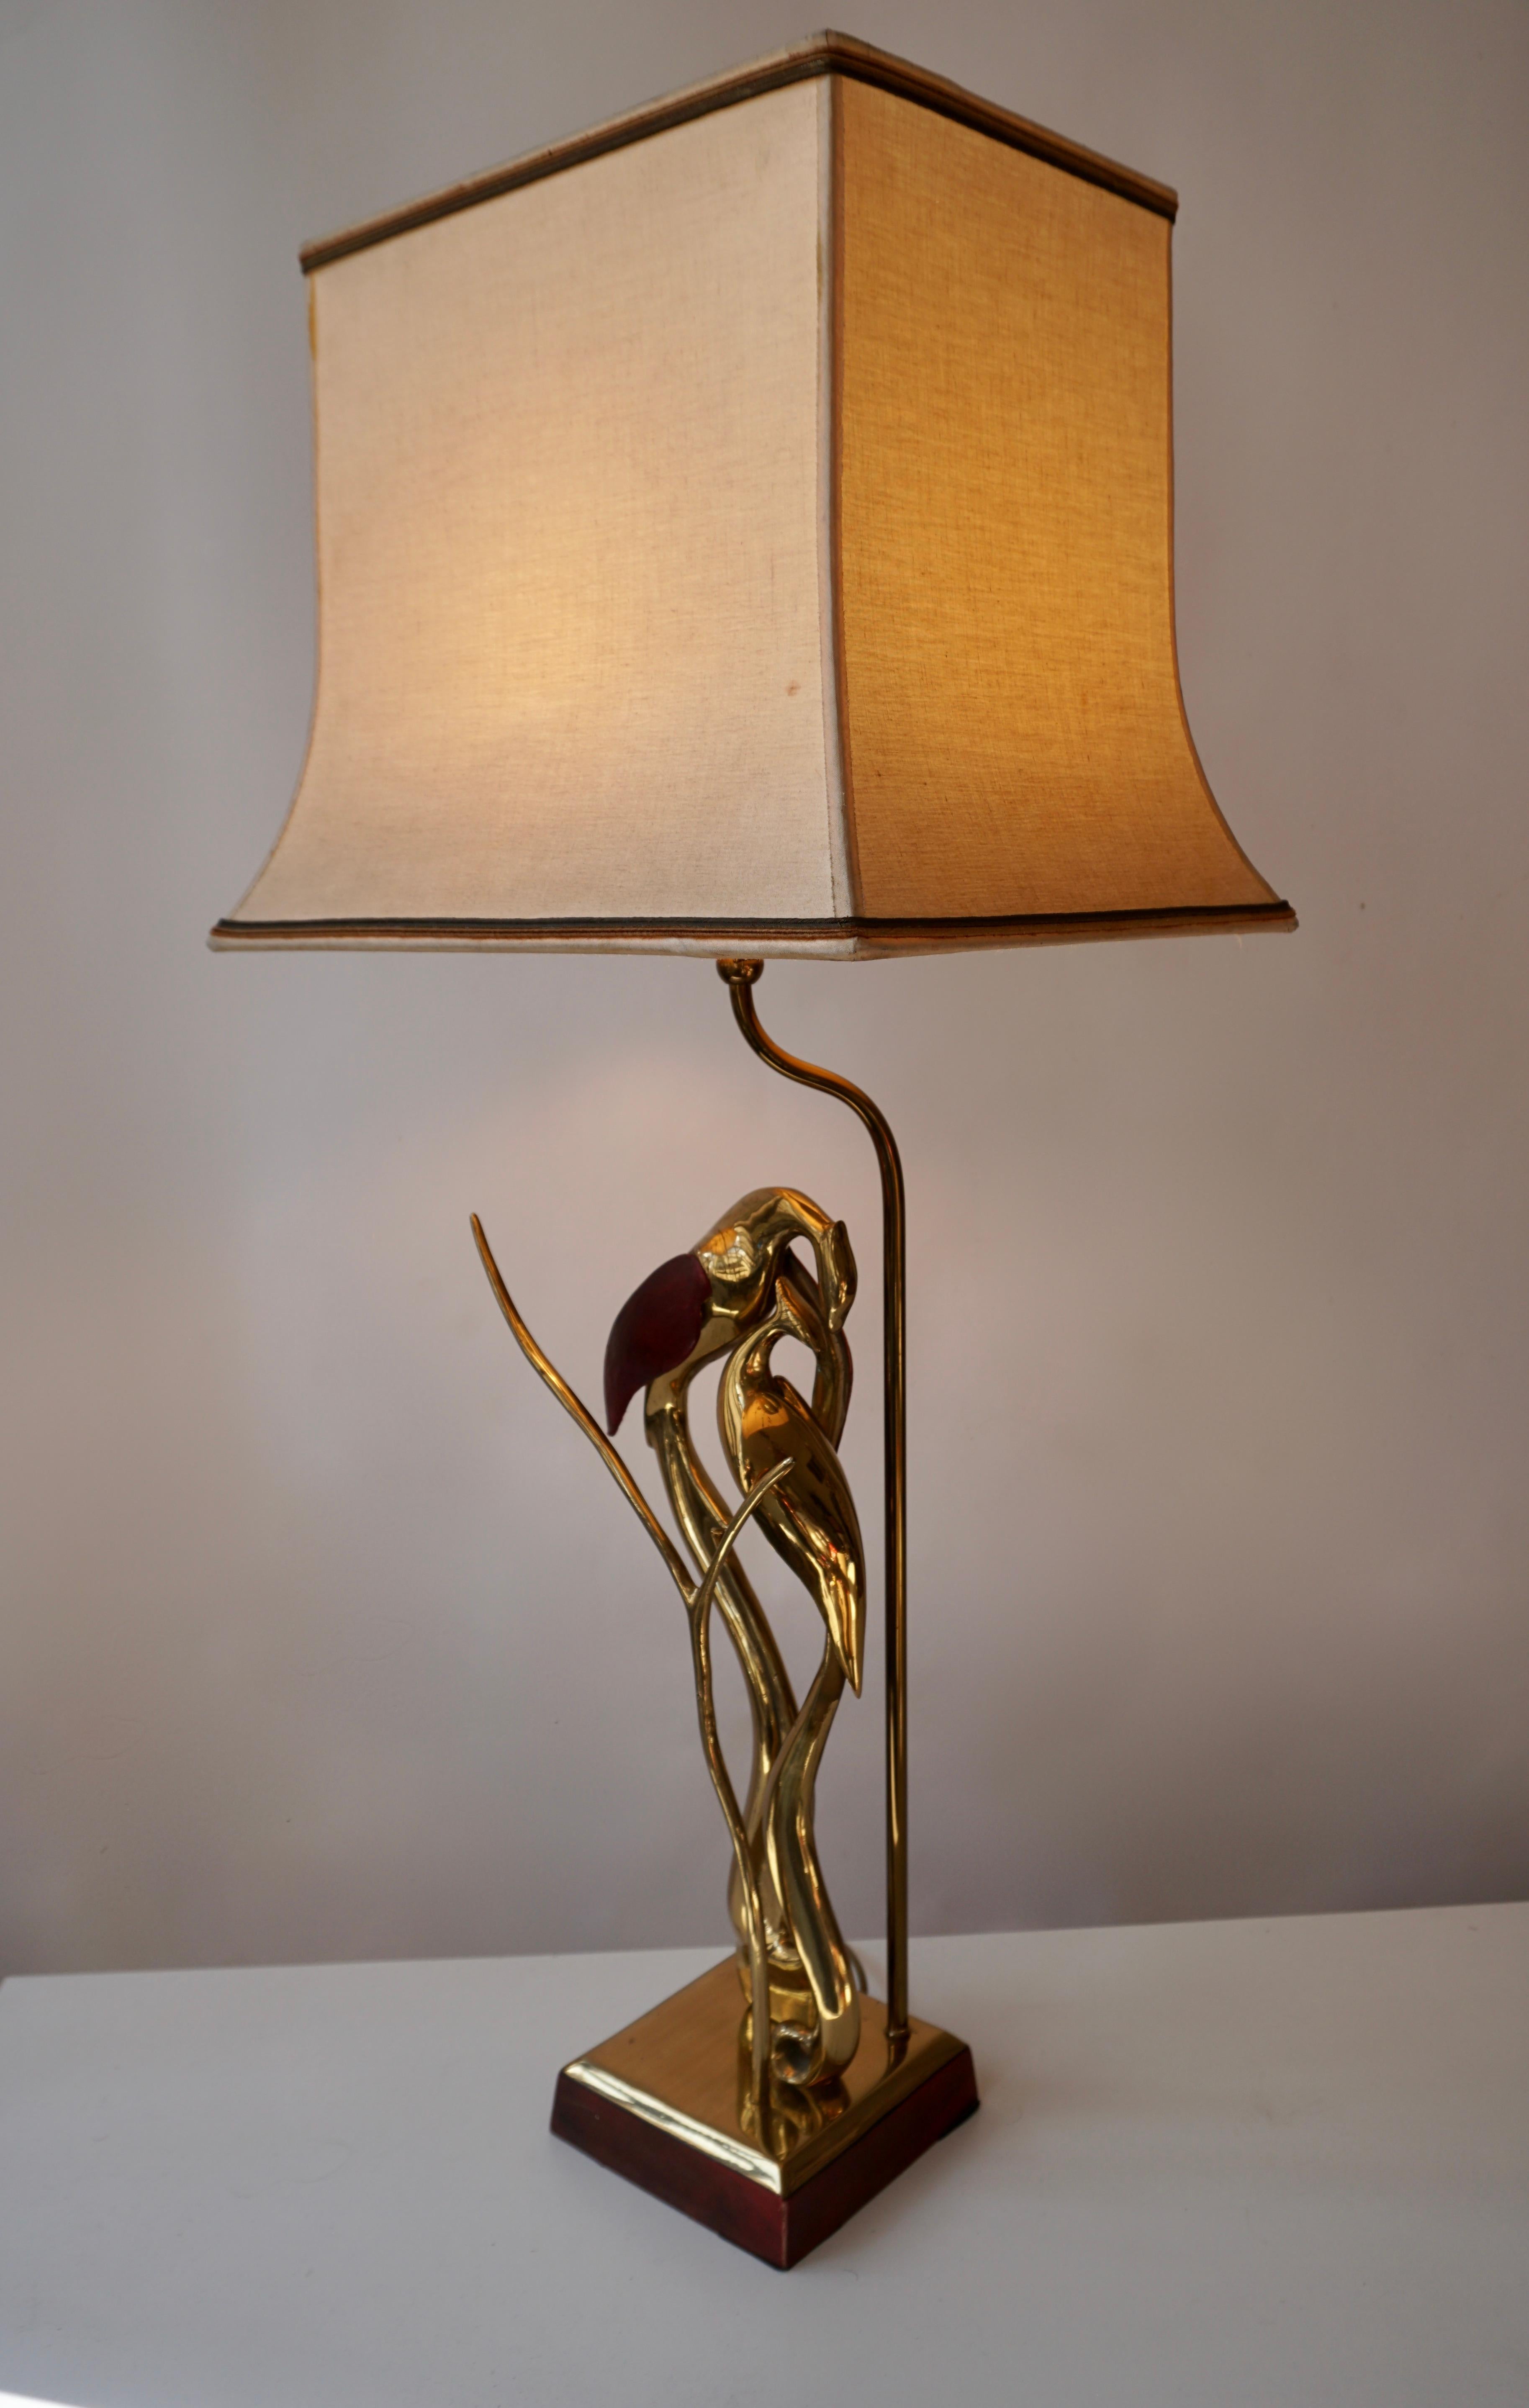 Diese schöne skulpturale Vogellampe ist aus Messing mit Lederflügeln, um 1970.
Maße: Höhe 82 cm.
Breite 35 cm.
Tiefe 28 cm.